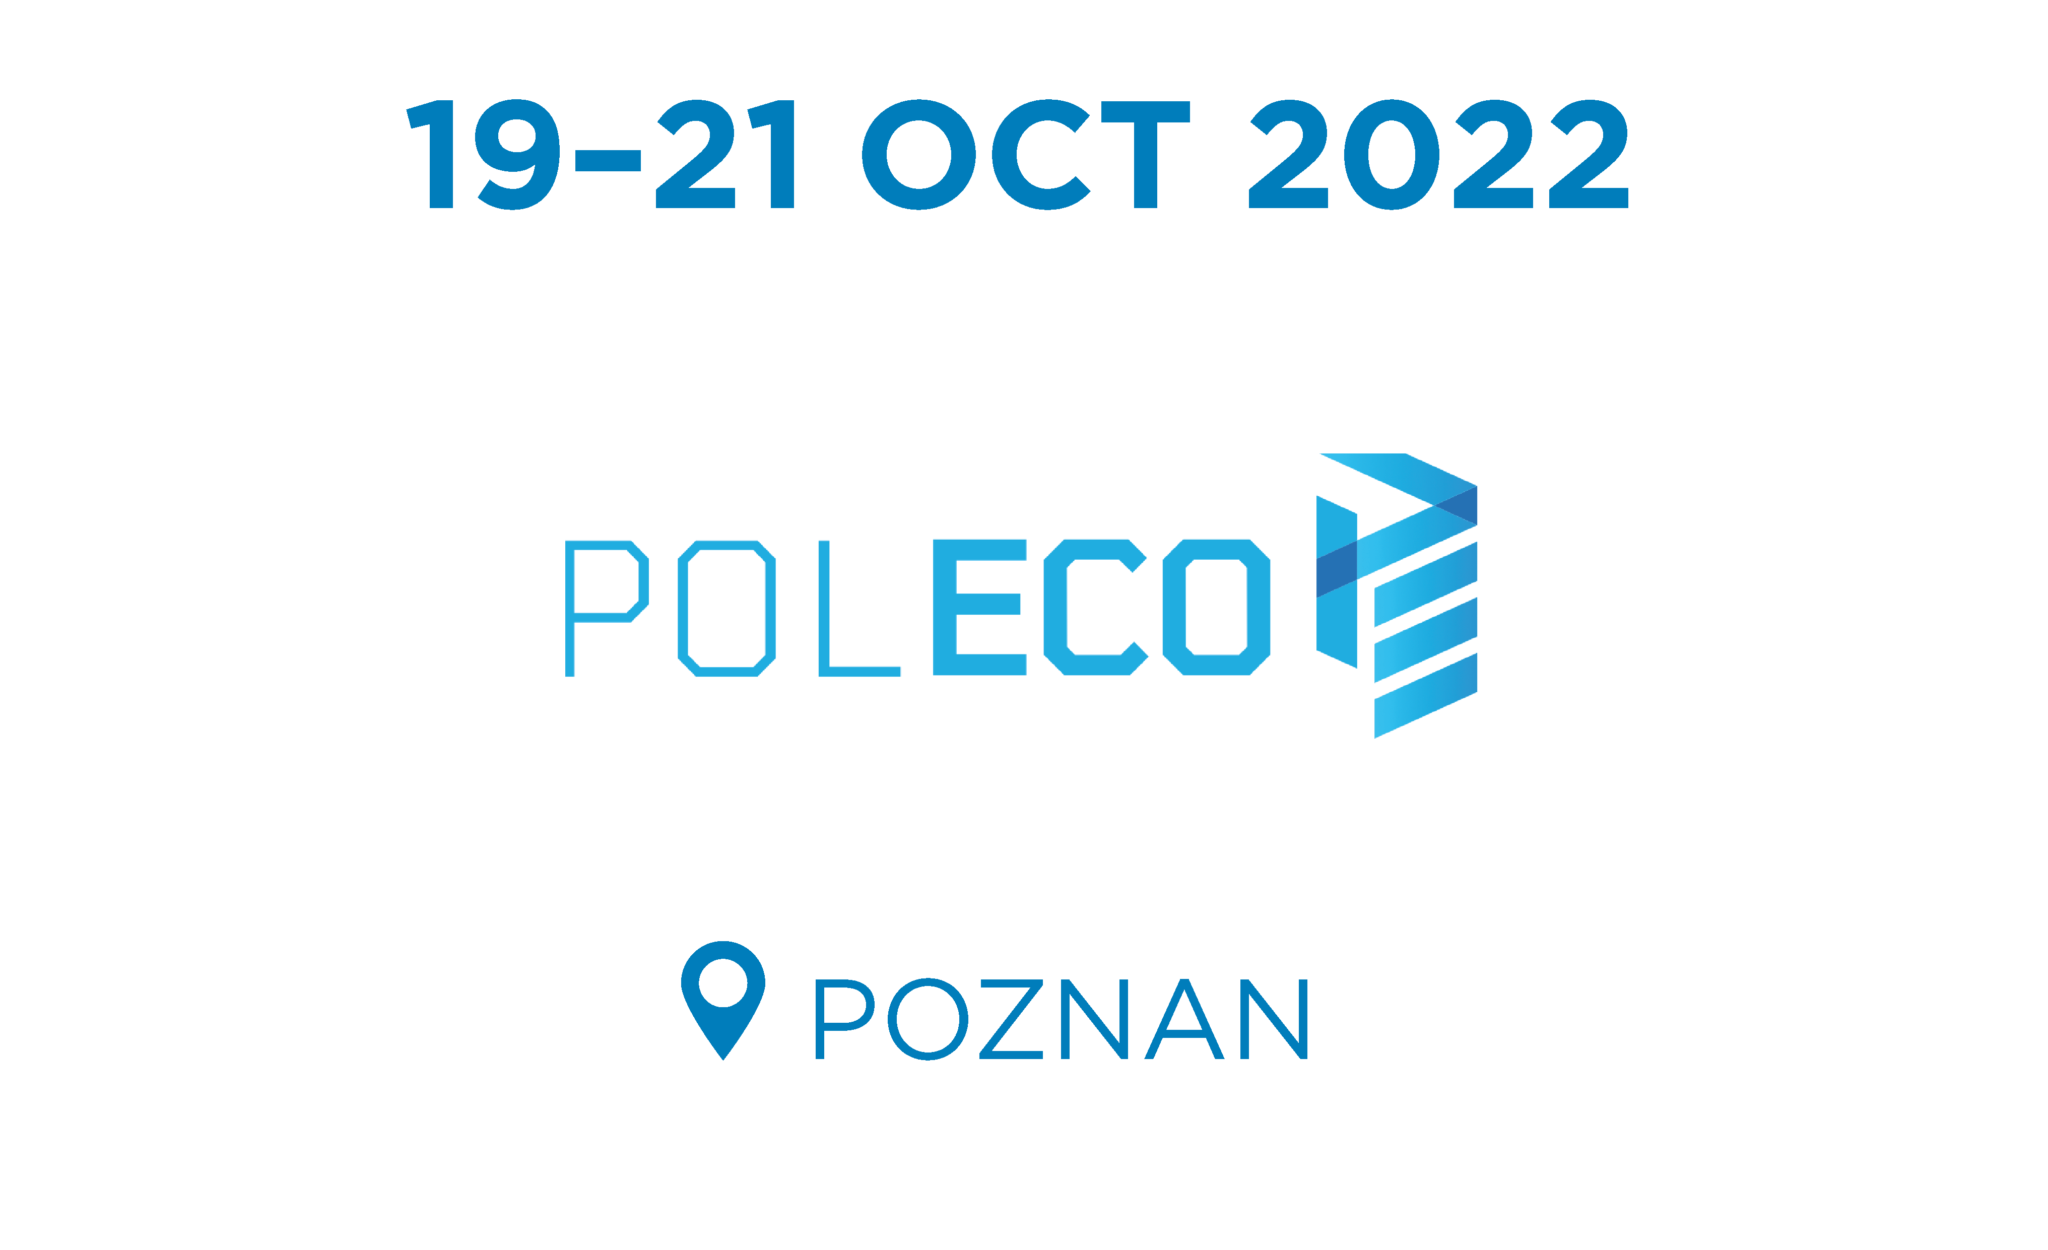 Jaaroverzicht 2022_Poleco